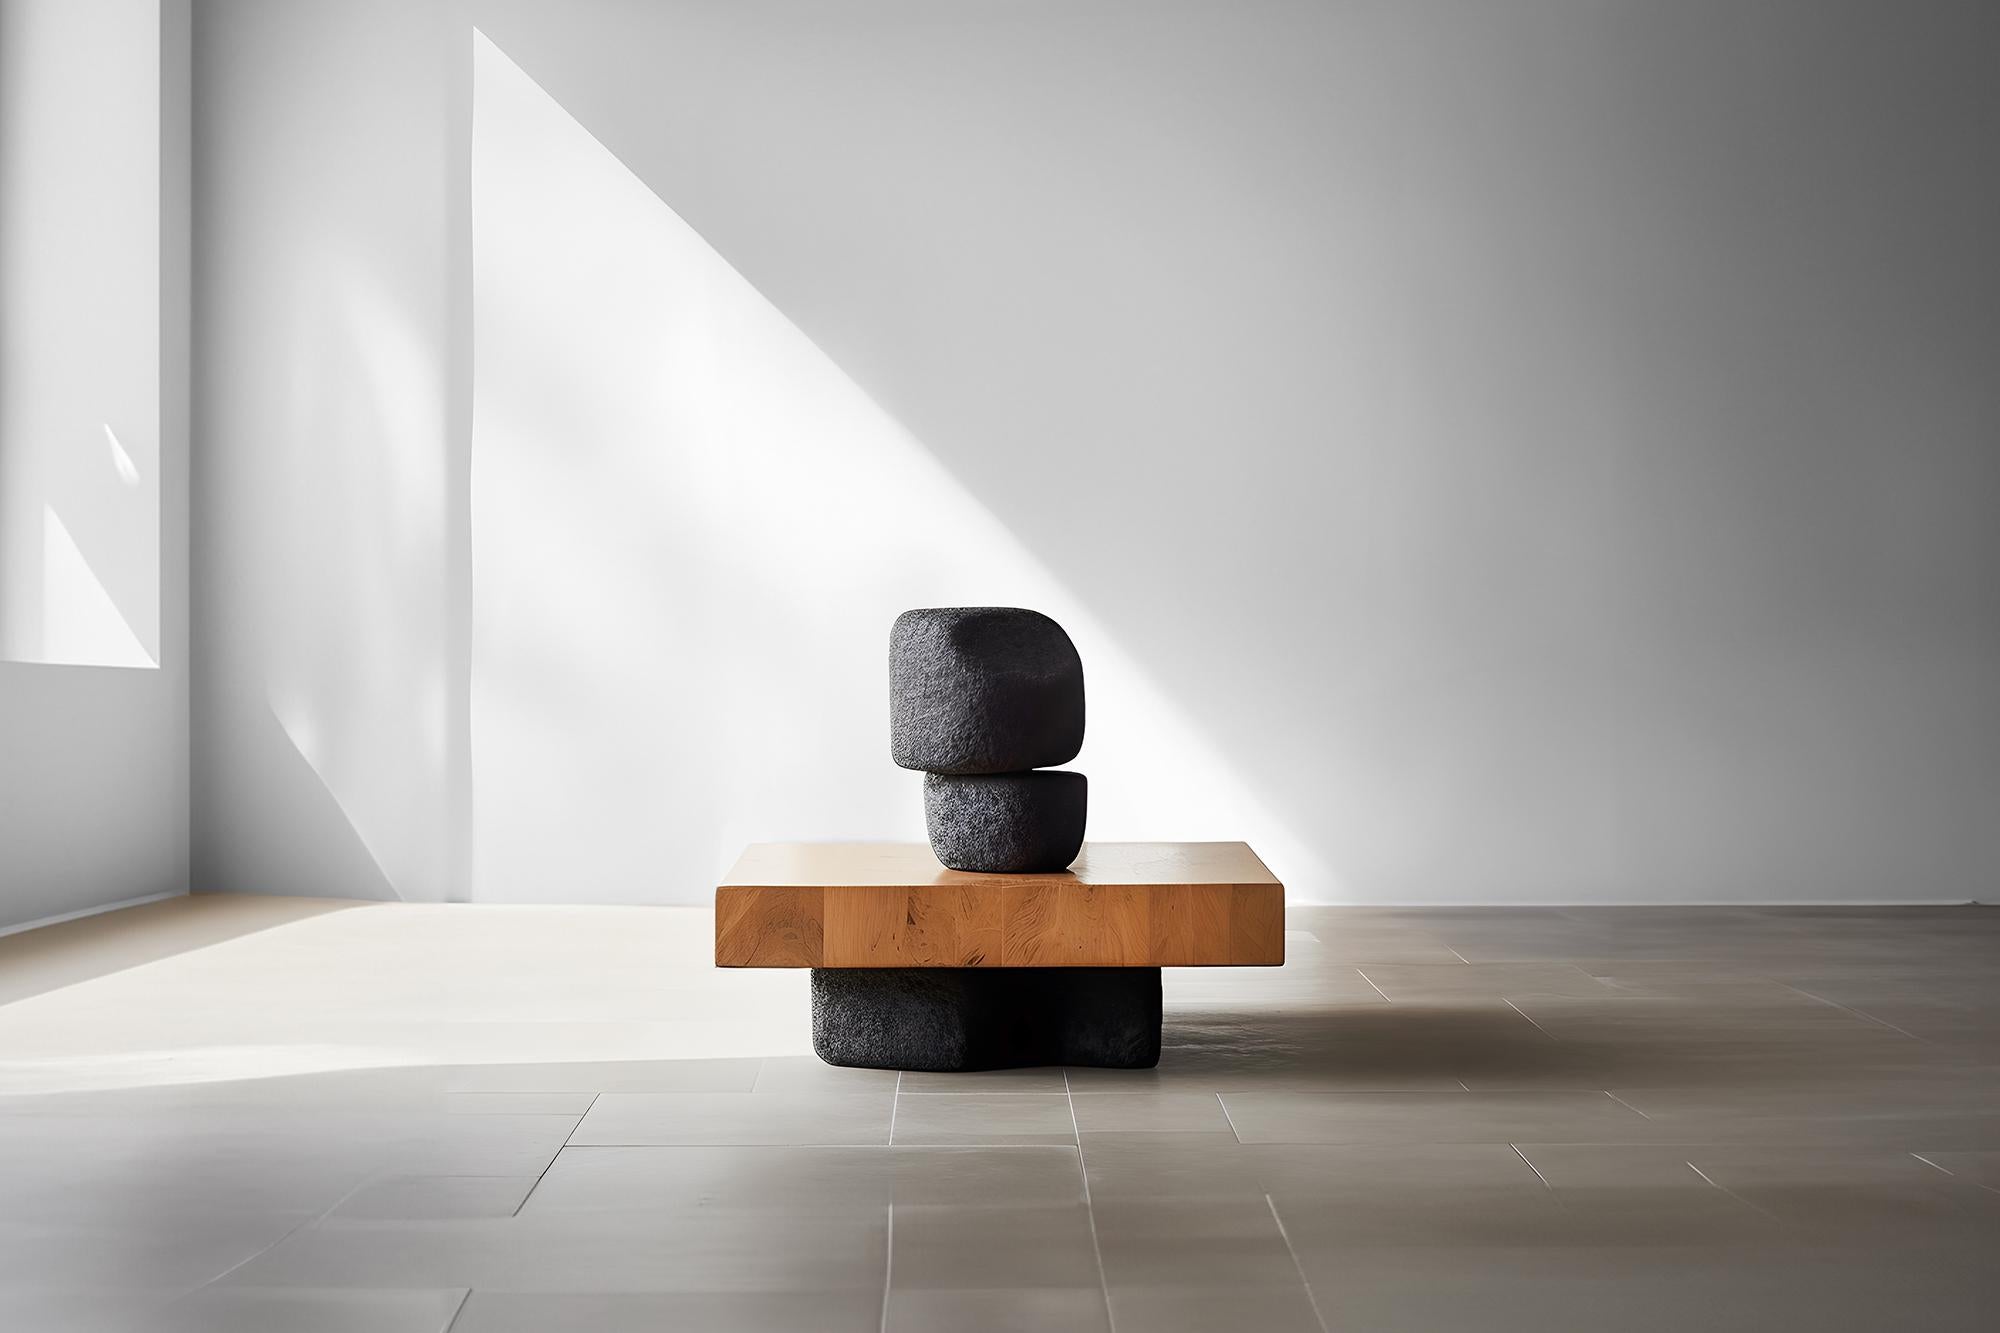 Table en bois massif inspirée de la sculpture Unseen Force #28 par Joel Escalona, Decor Focus


Table basse sculpturale en bois massif avec une finition naturelle à base d'eau ou carbonisée. En raison de la nature du processus de production, chaque